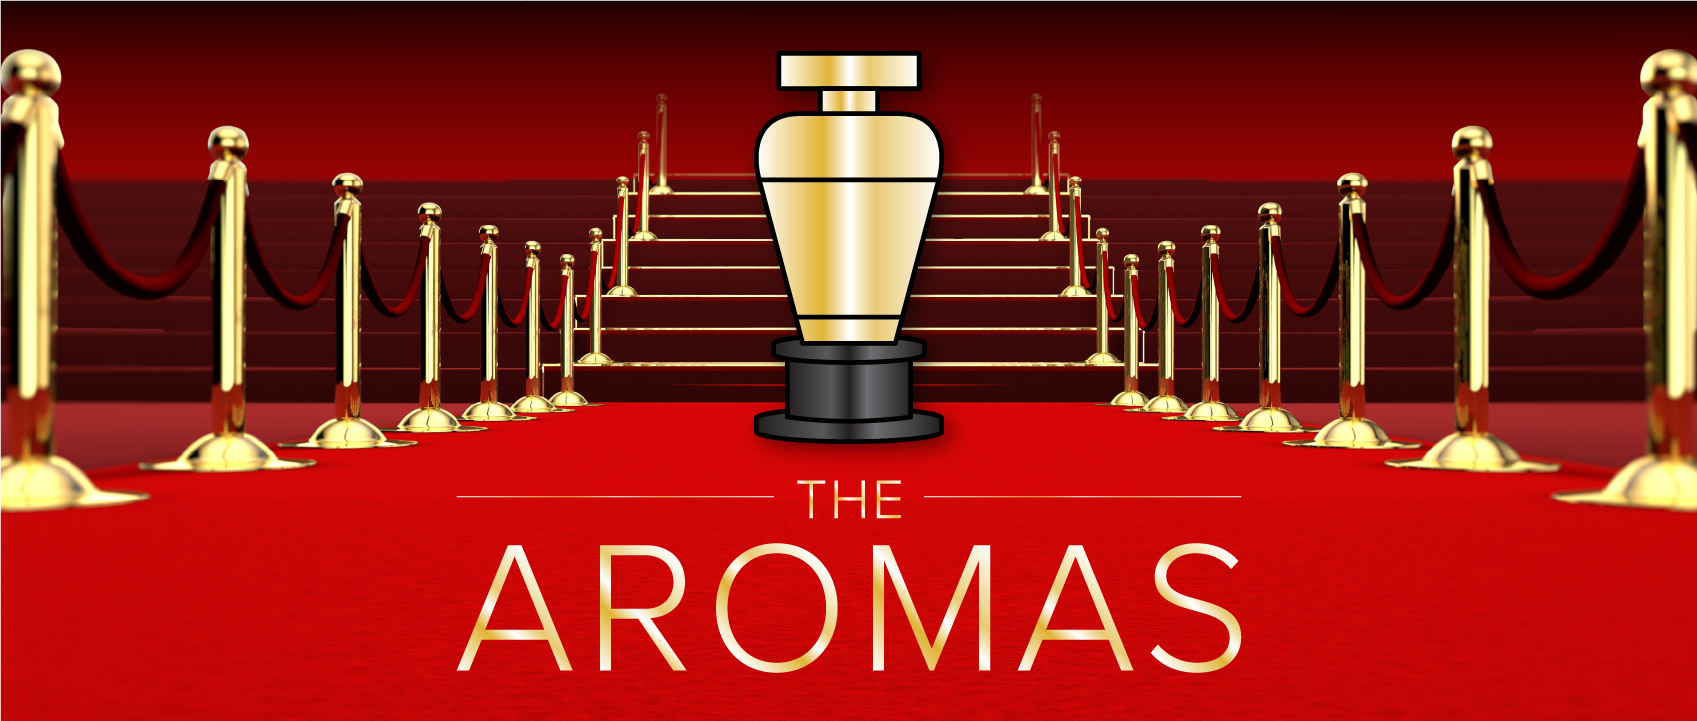 the aromas lore perfumery oscars perfume awards